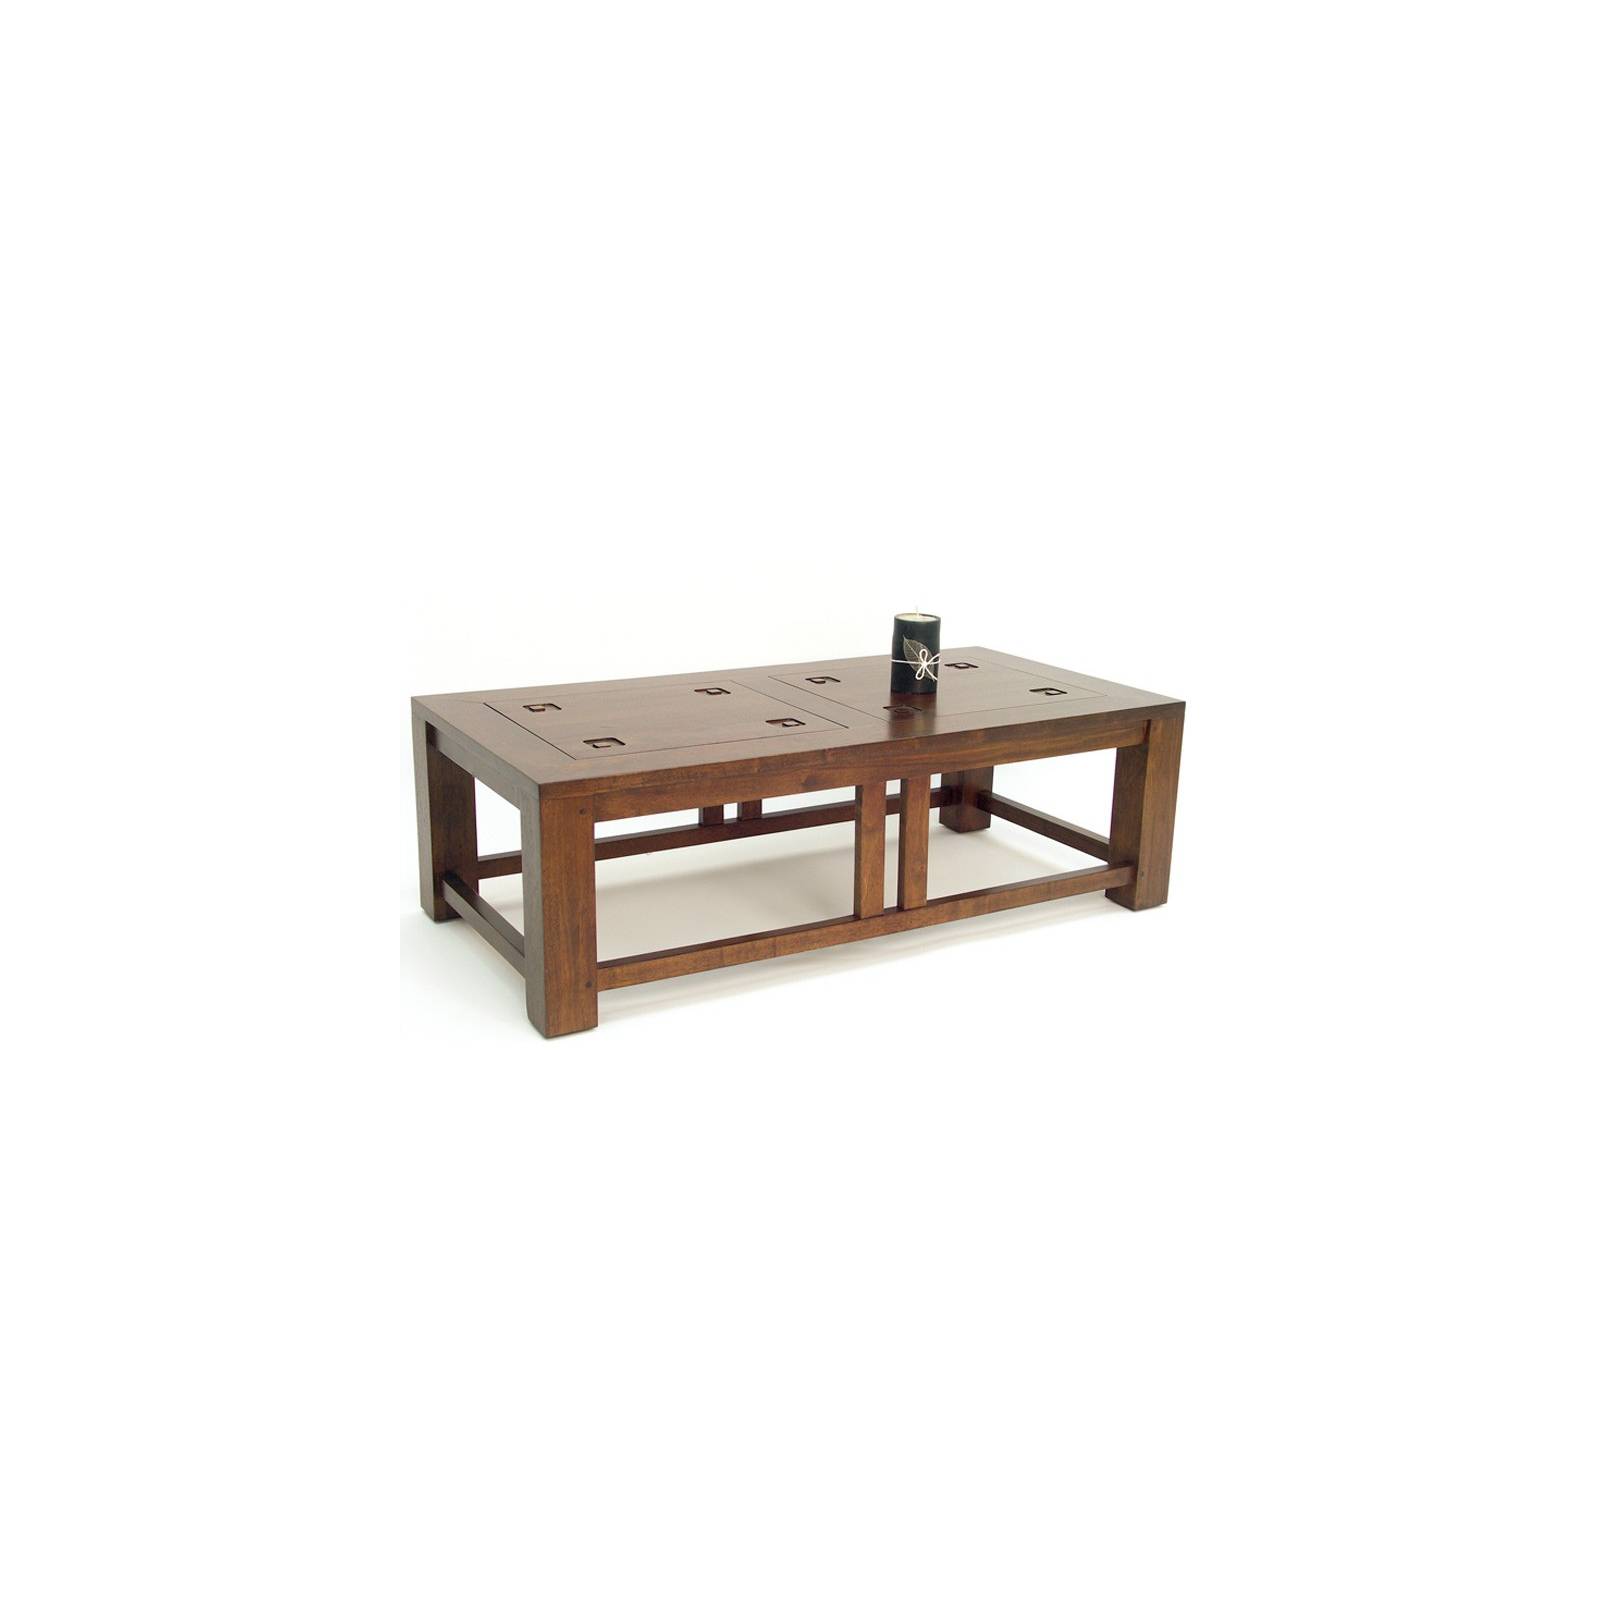 Table Basse Rect. Tanoa Hévéa - mobilier bois massif